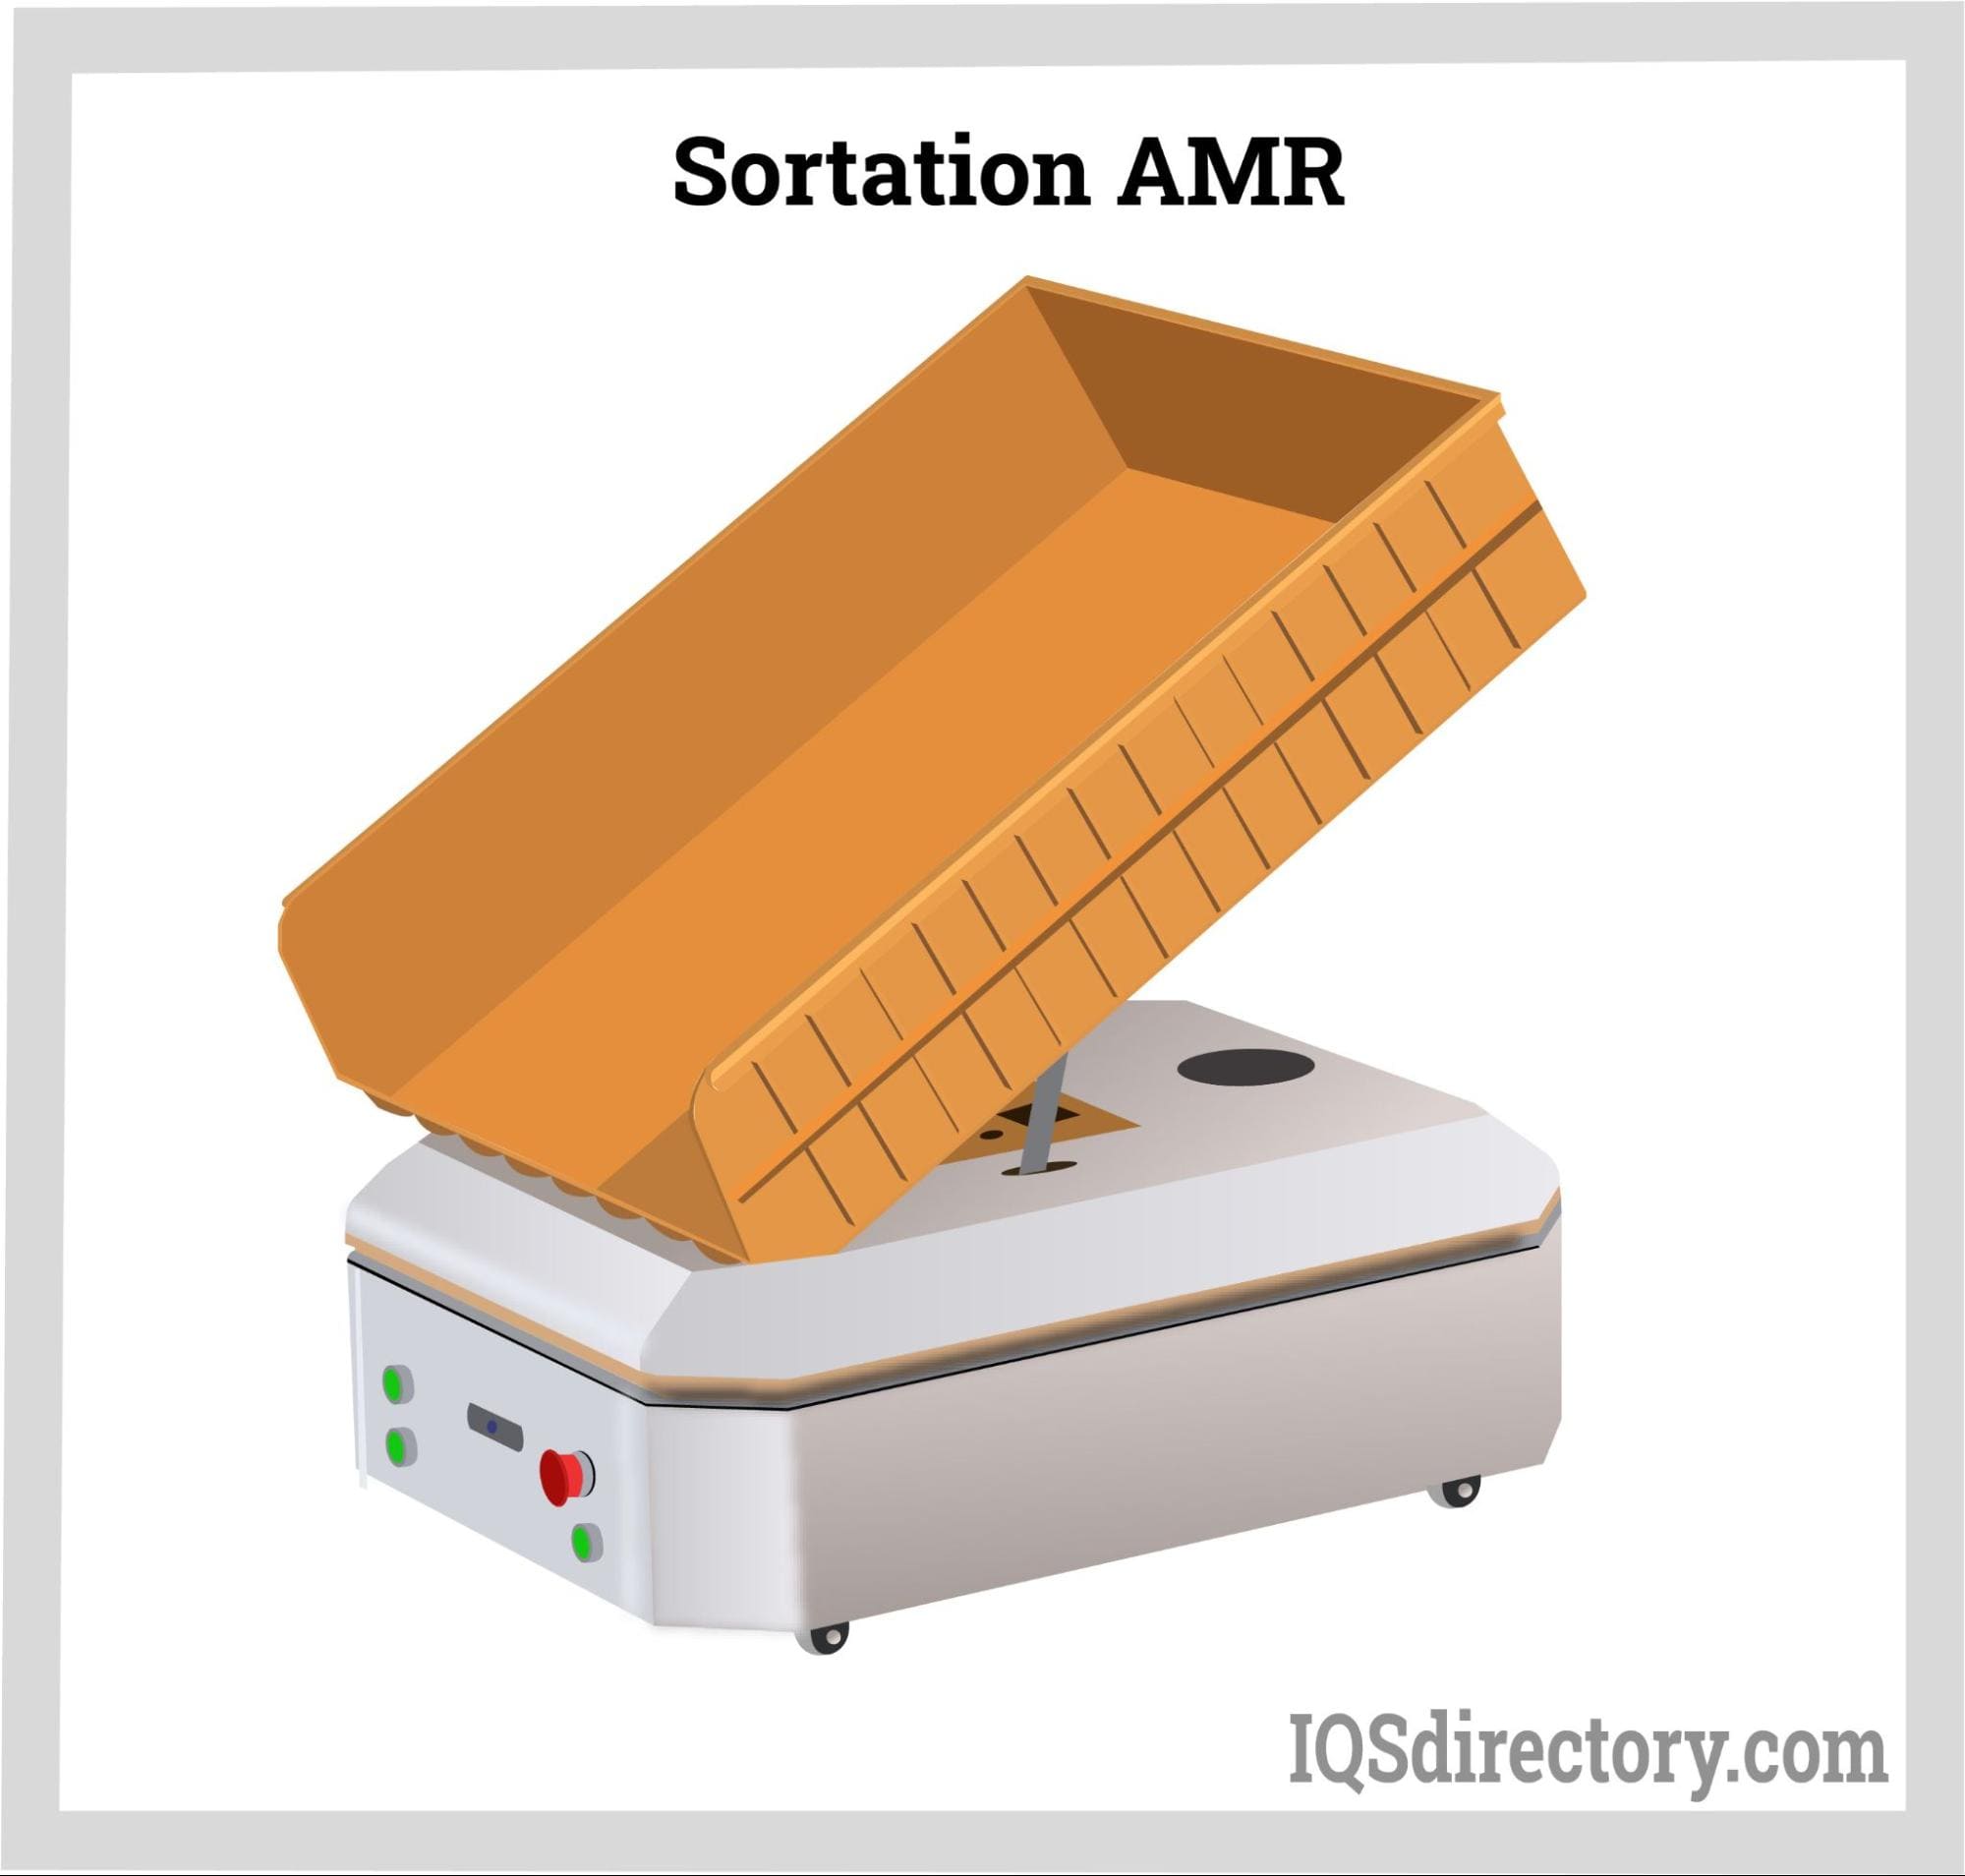 Sortation AMR